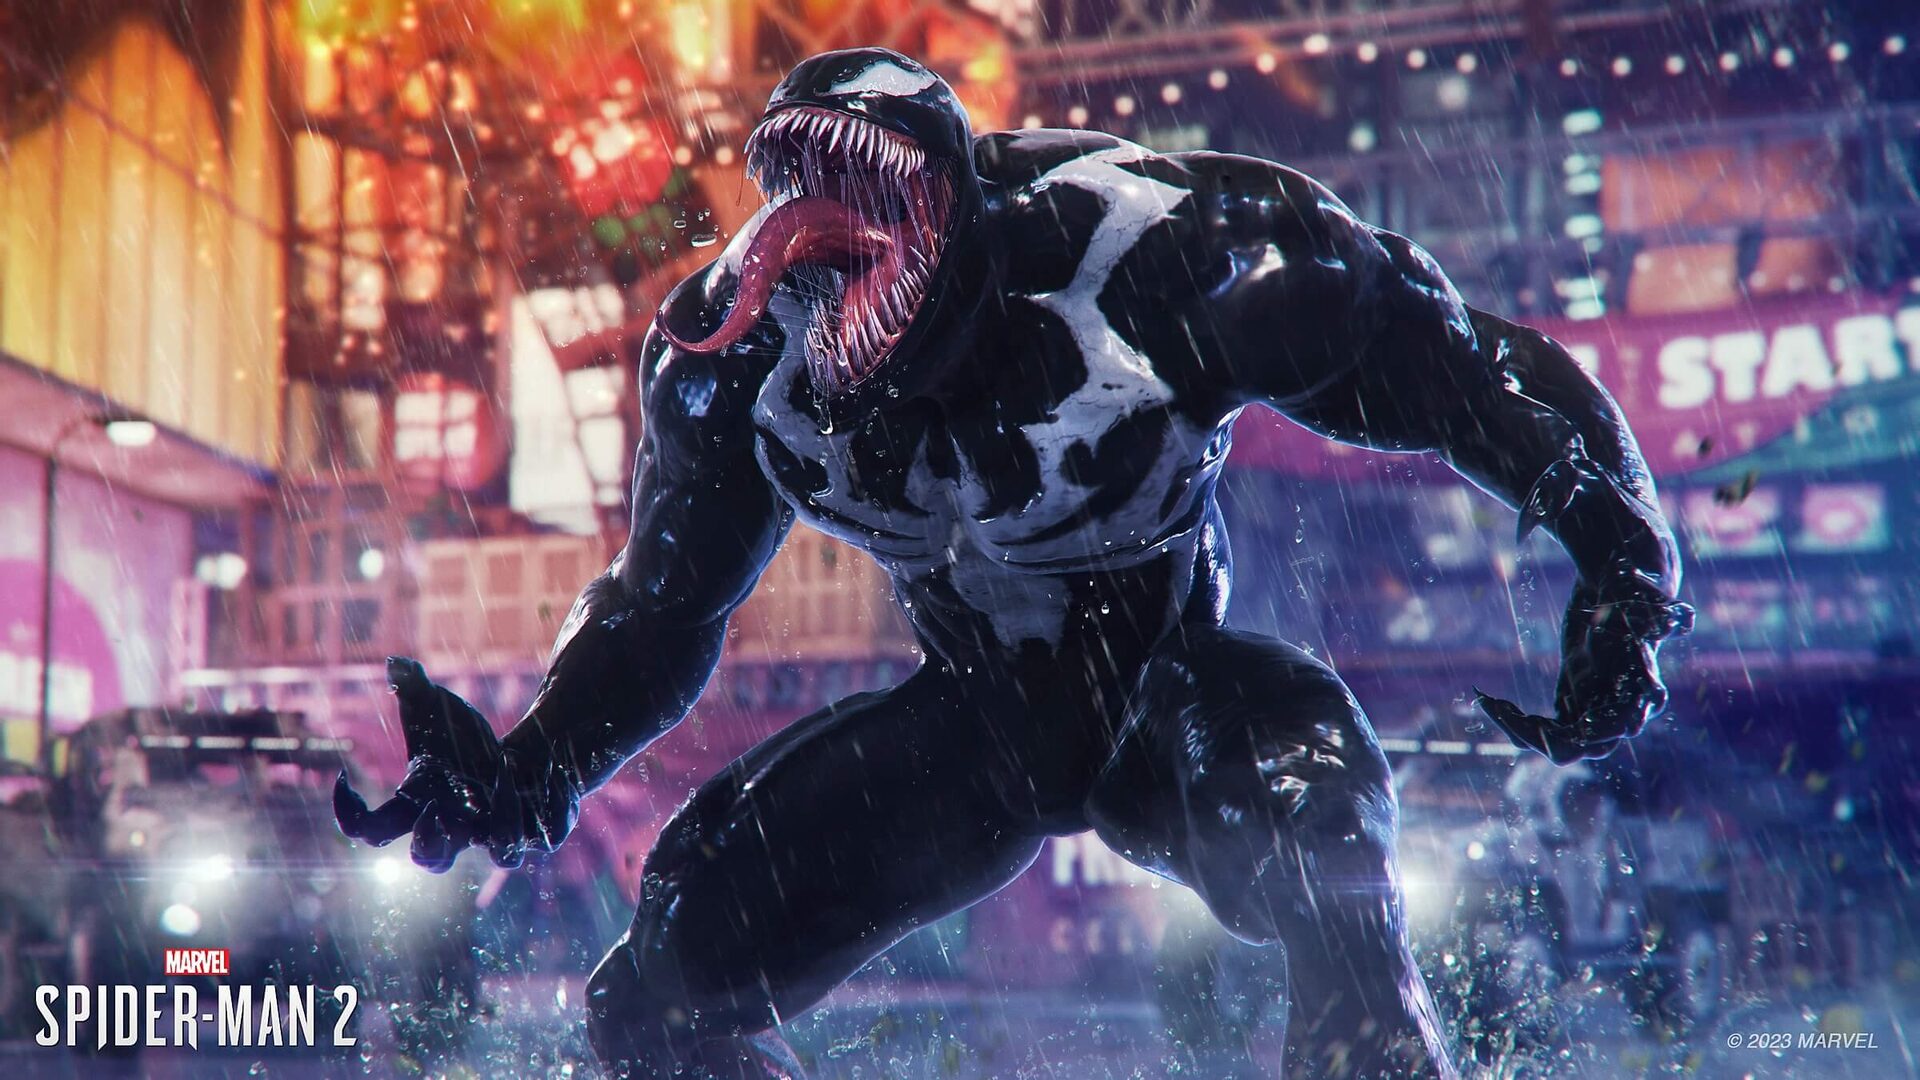 Marvel's Spider-Man 2 - Spider Man 2 - PS5 Digital - Edição Padrão -  GameShopp